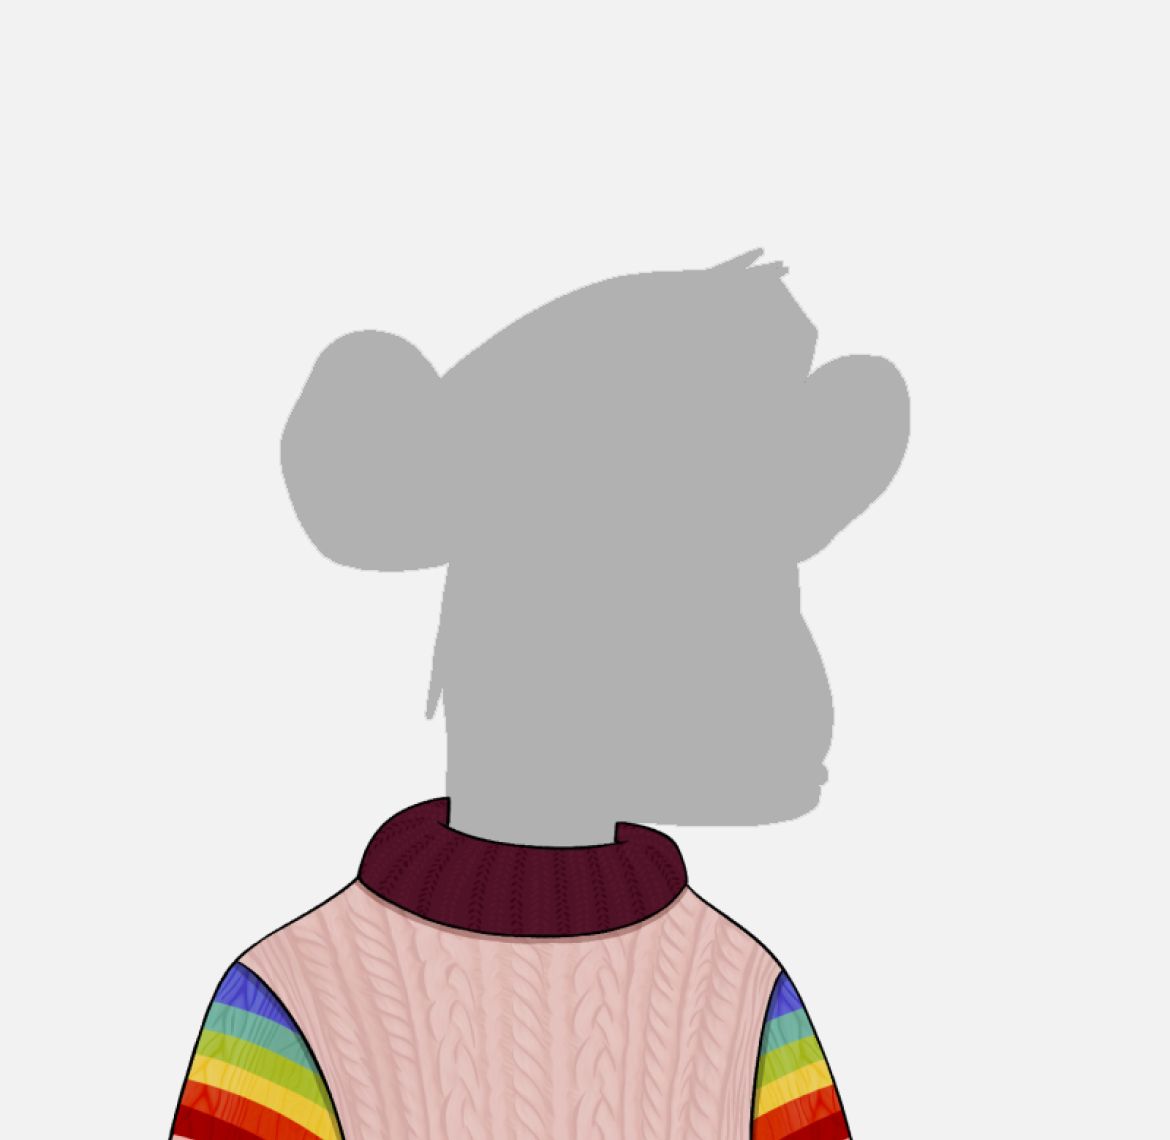 monkey silhouette wearing a sweater